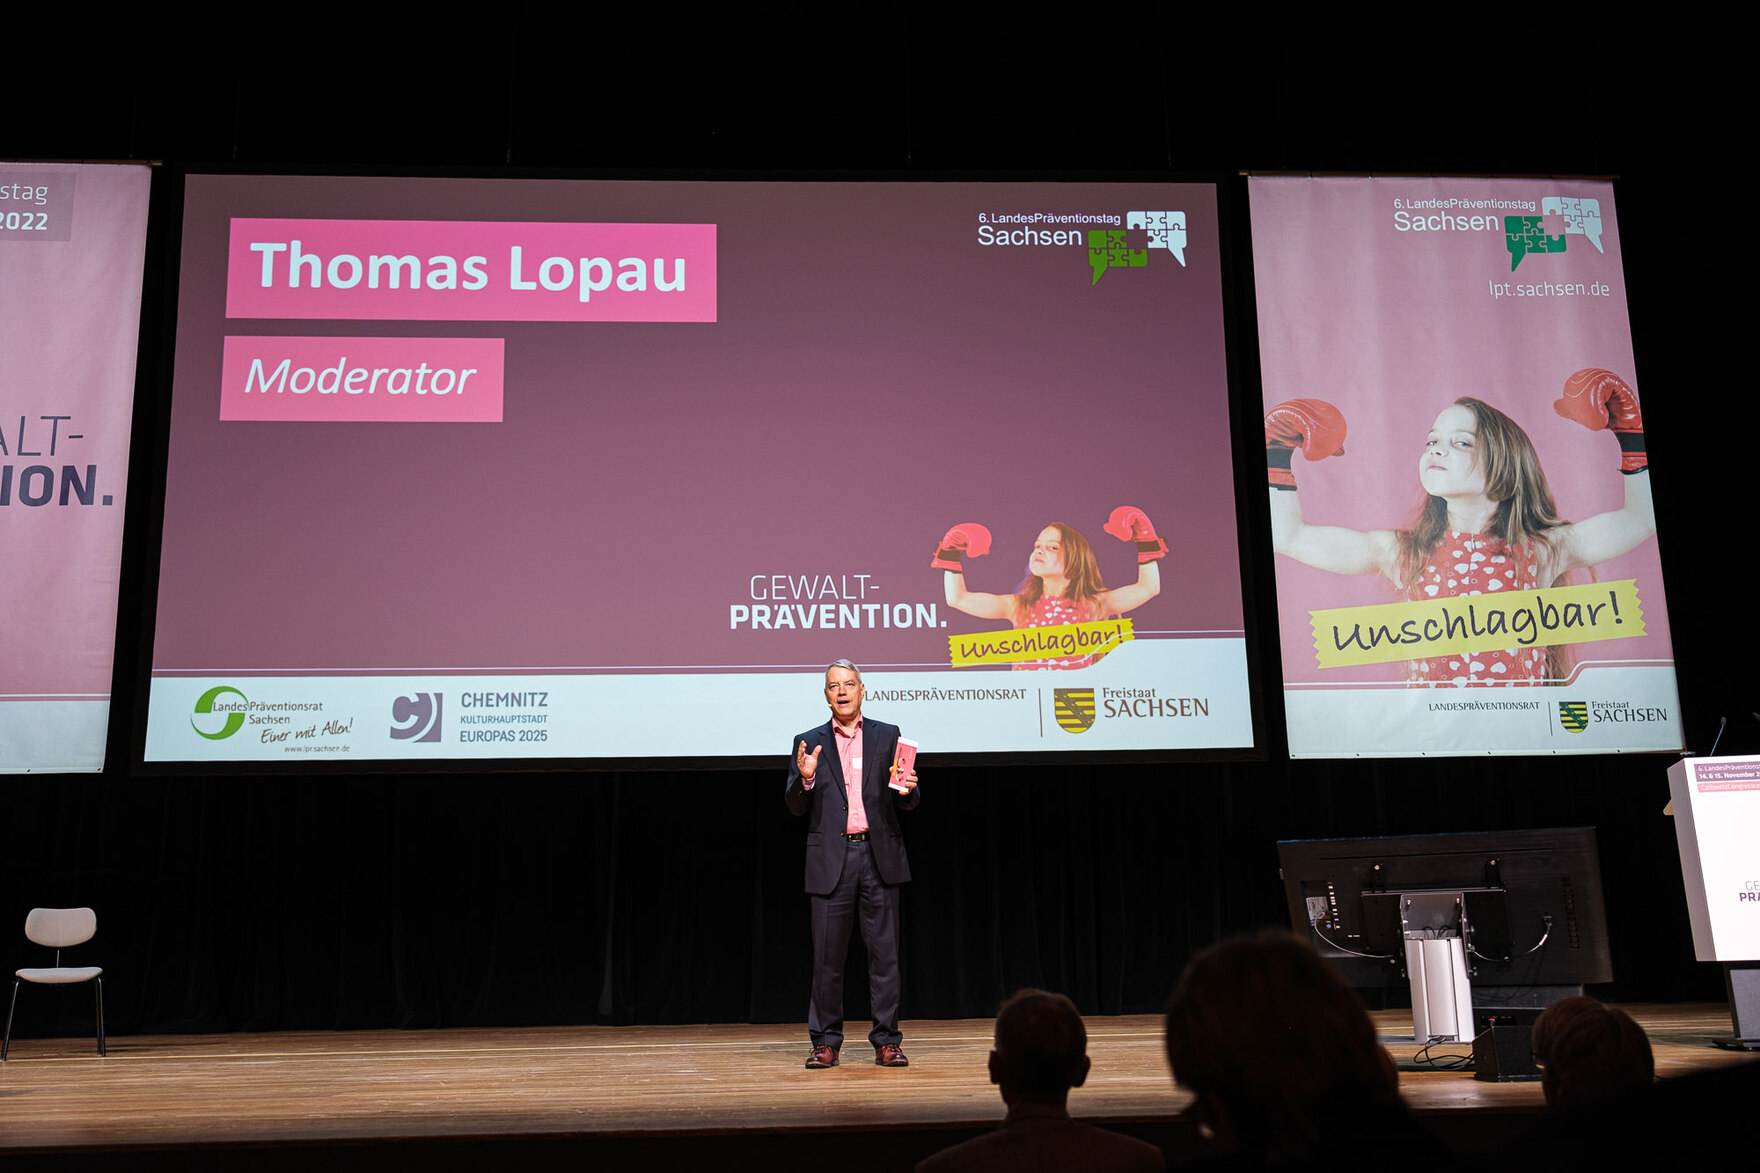 Bild zeigt Thomas Lopau auf der Bühne beim Moderieren beim LPT6